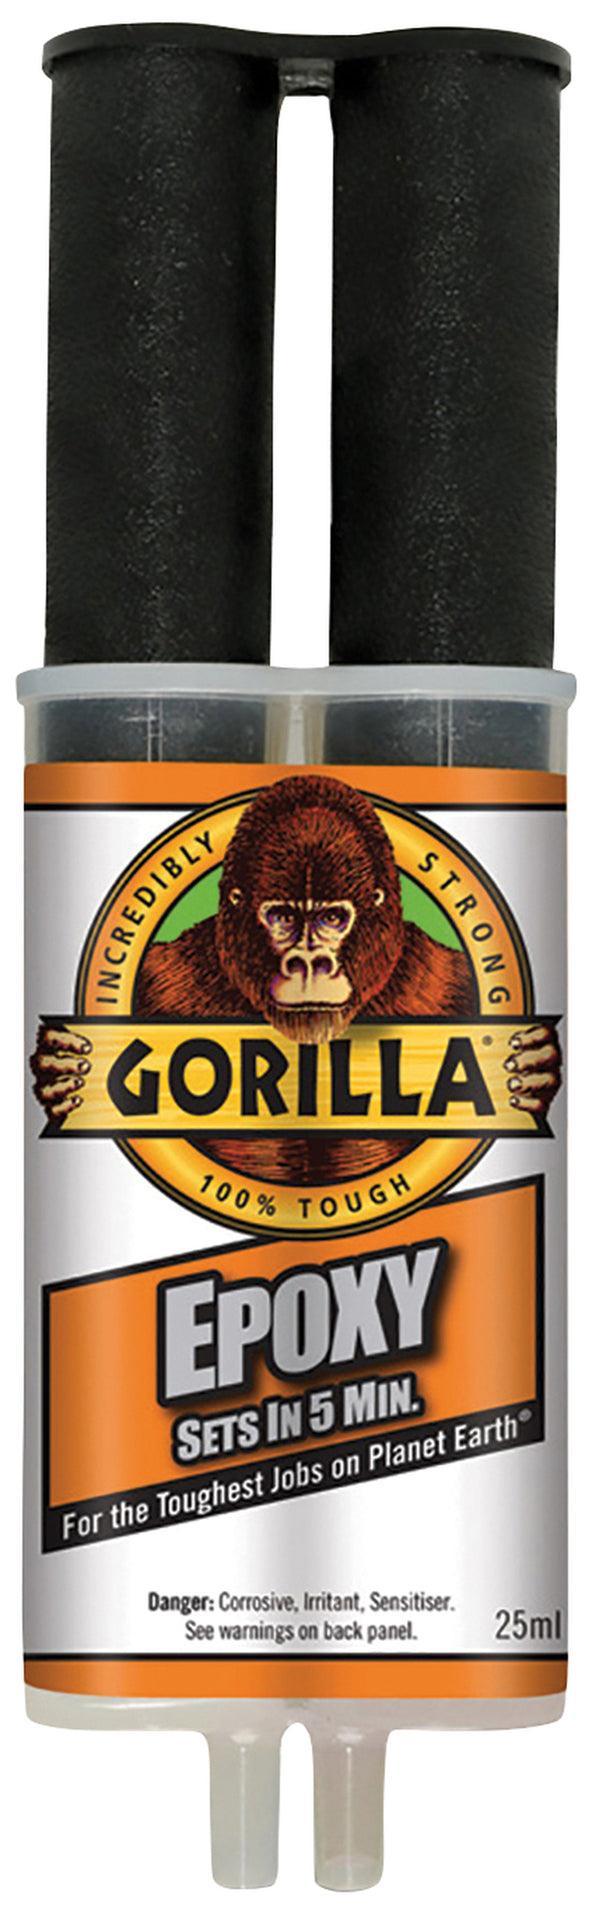 gorilla epoxy lim - Flue.no - epoxylim